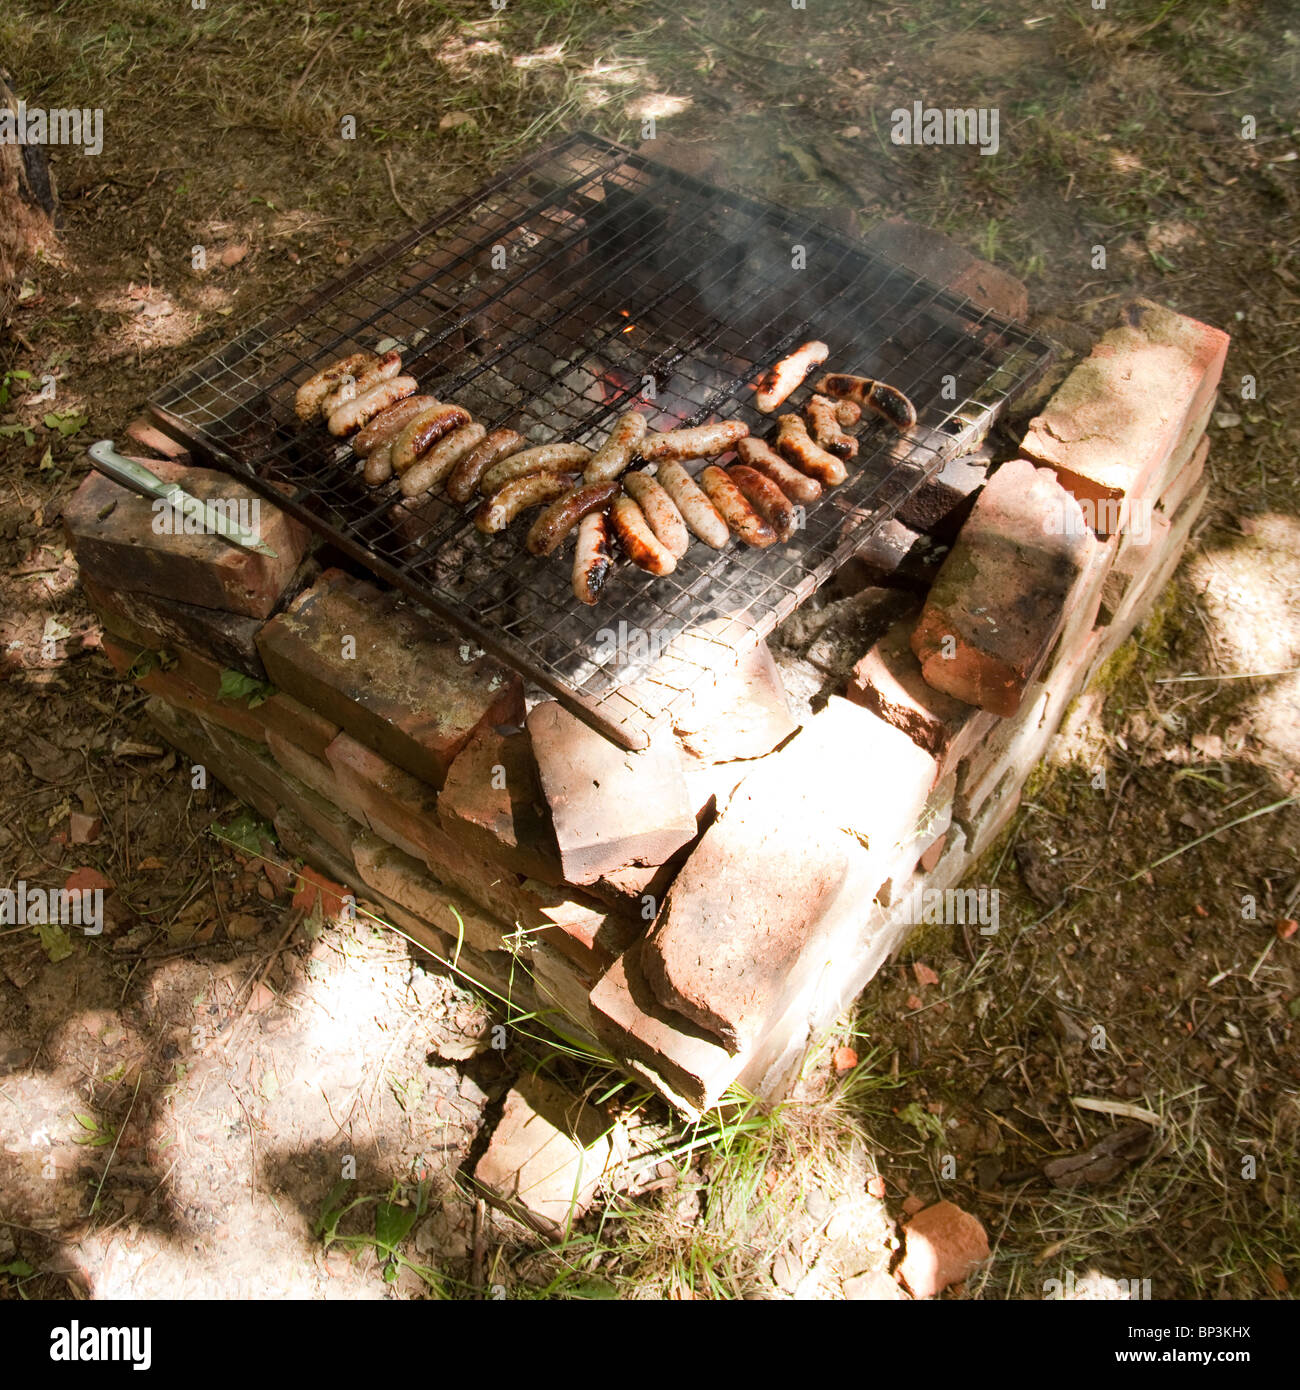 La cuisson des saucisses sur un feu de charbon ou barbecue. Hampshire, Angleterre, Royaume-Uni Banque D'Images